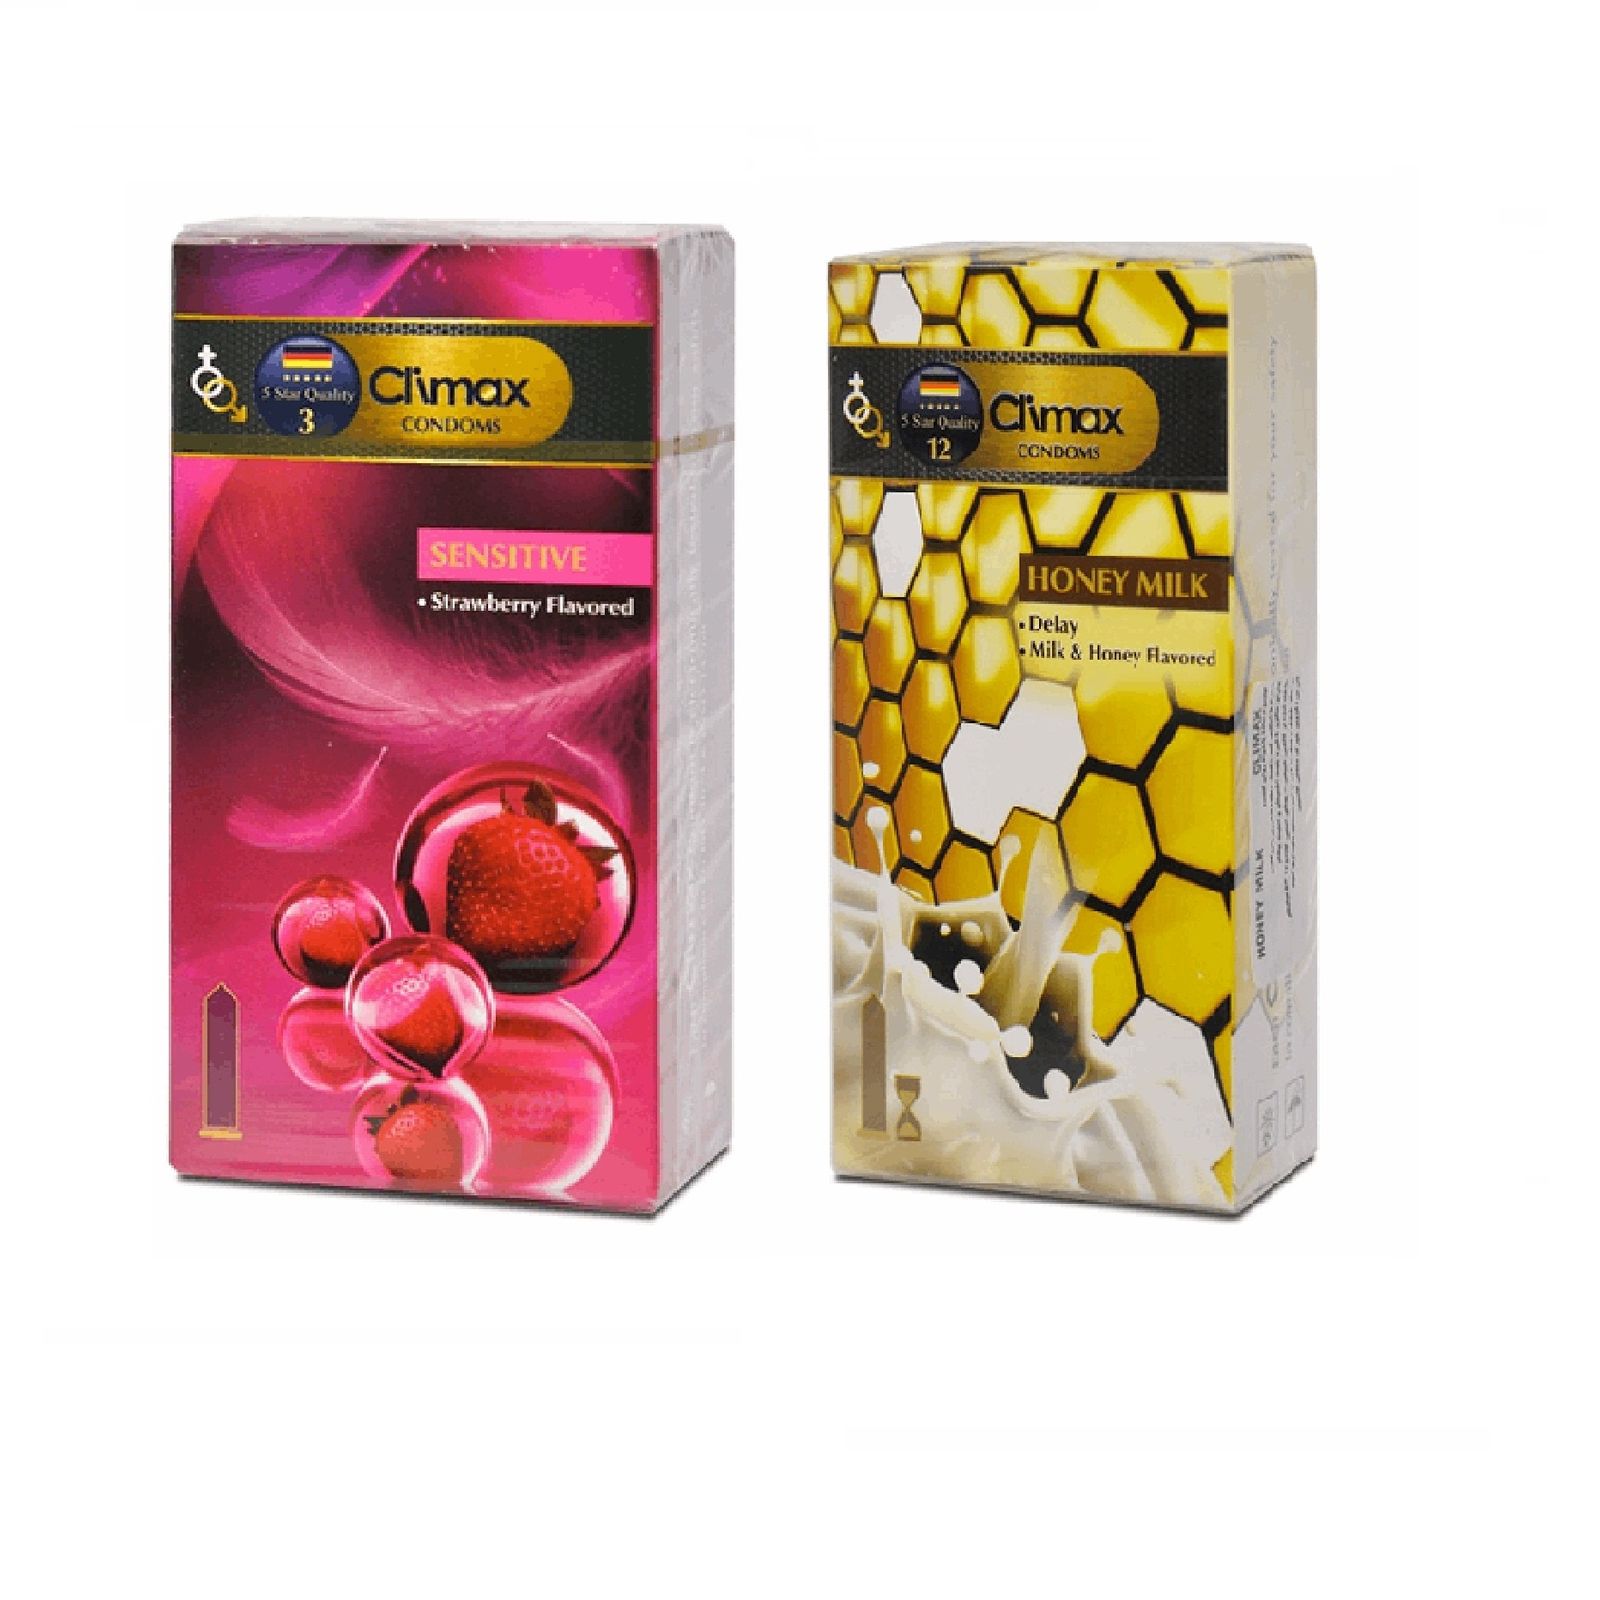 کاندوم کلایمکس مدل Sensitive بسته 12 عددی به همراه کاندوم کلایمکس مدل Honey Milk  بسته 12 عددی   -  - 2